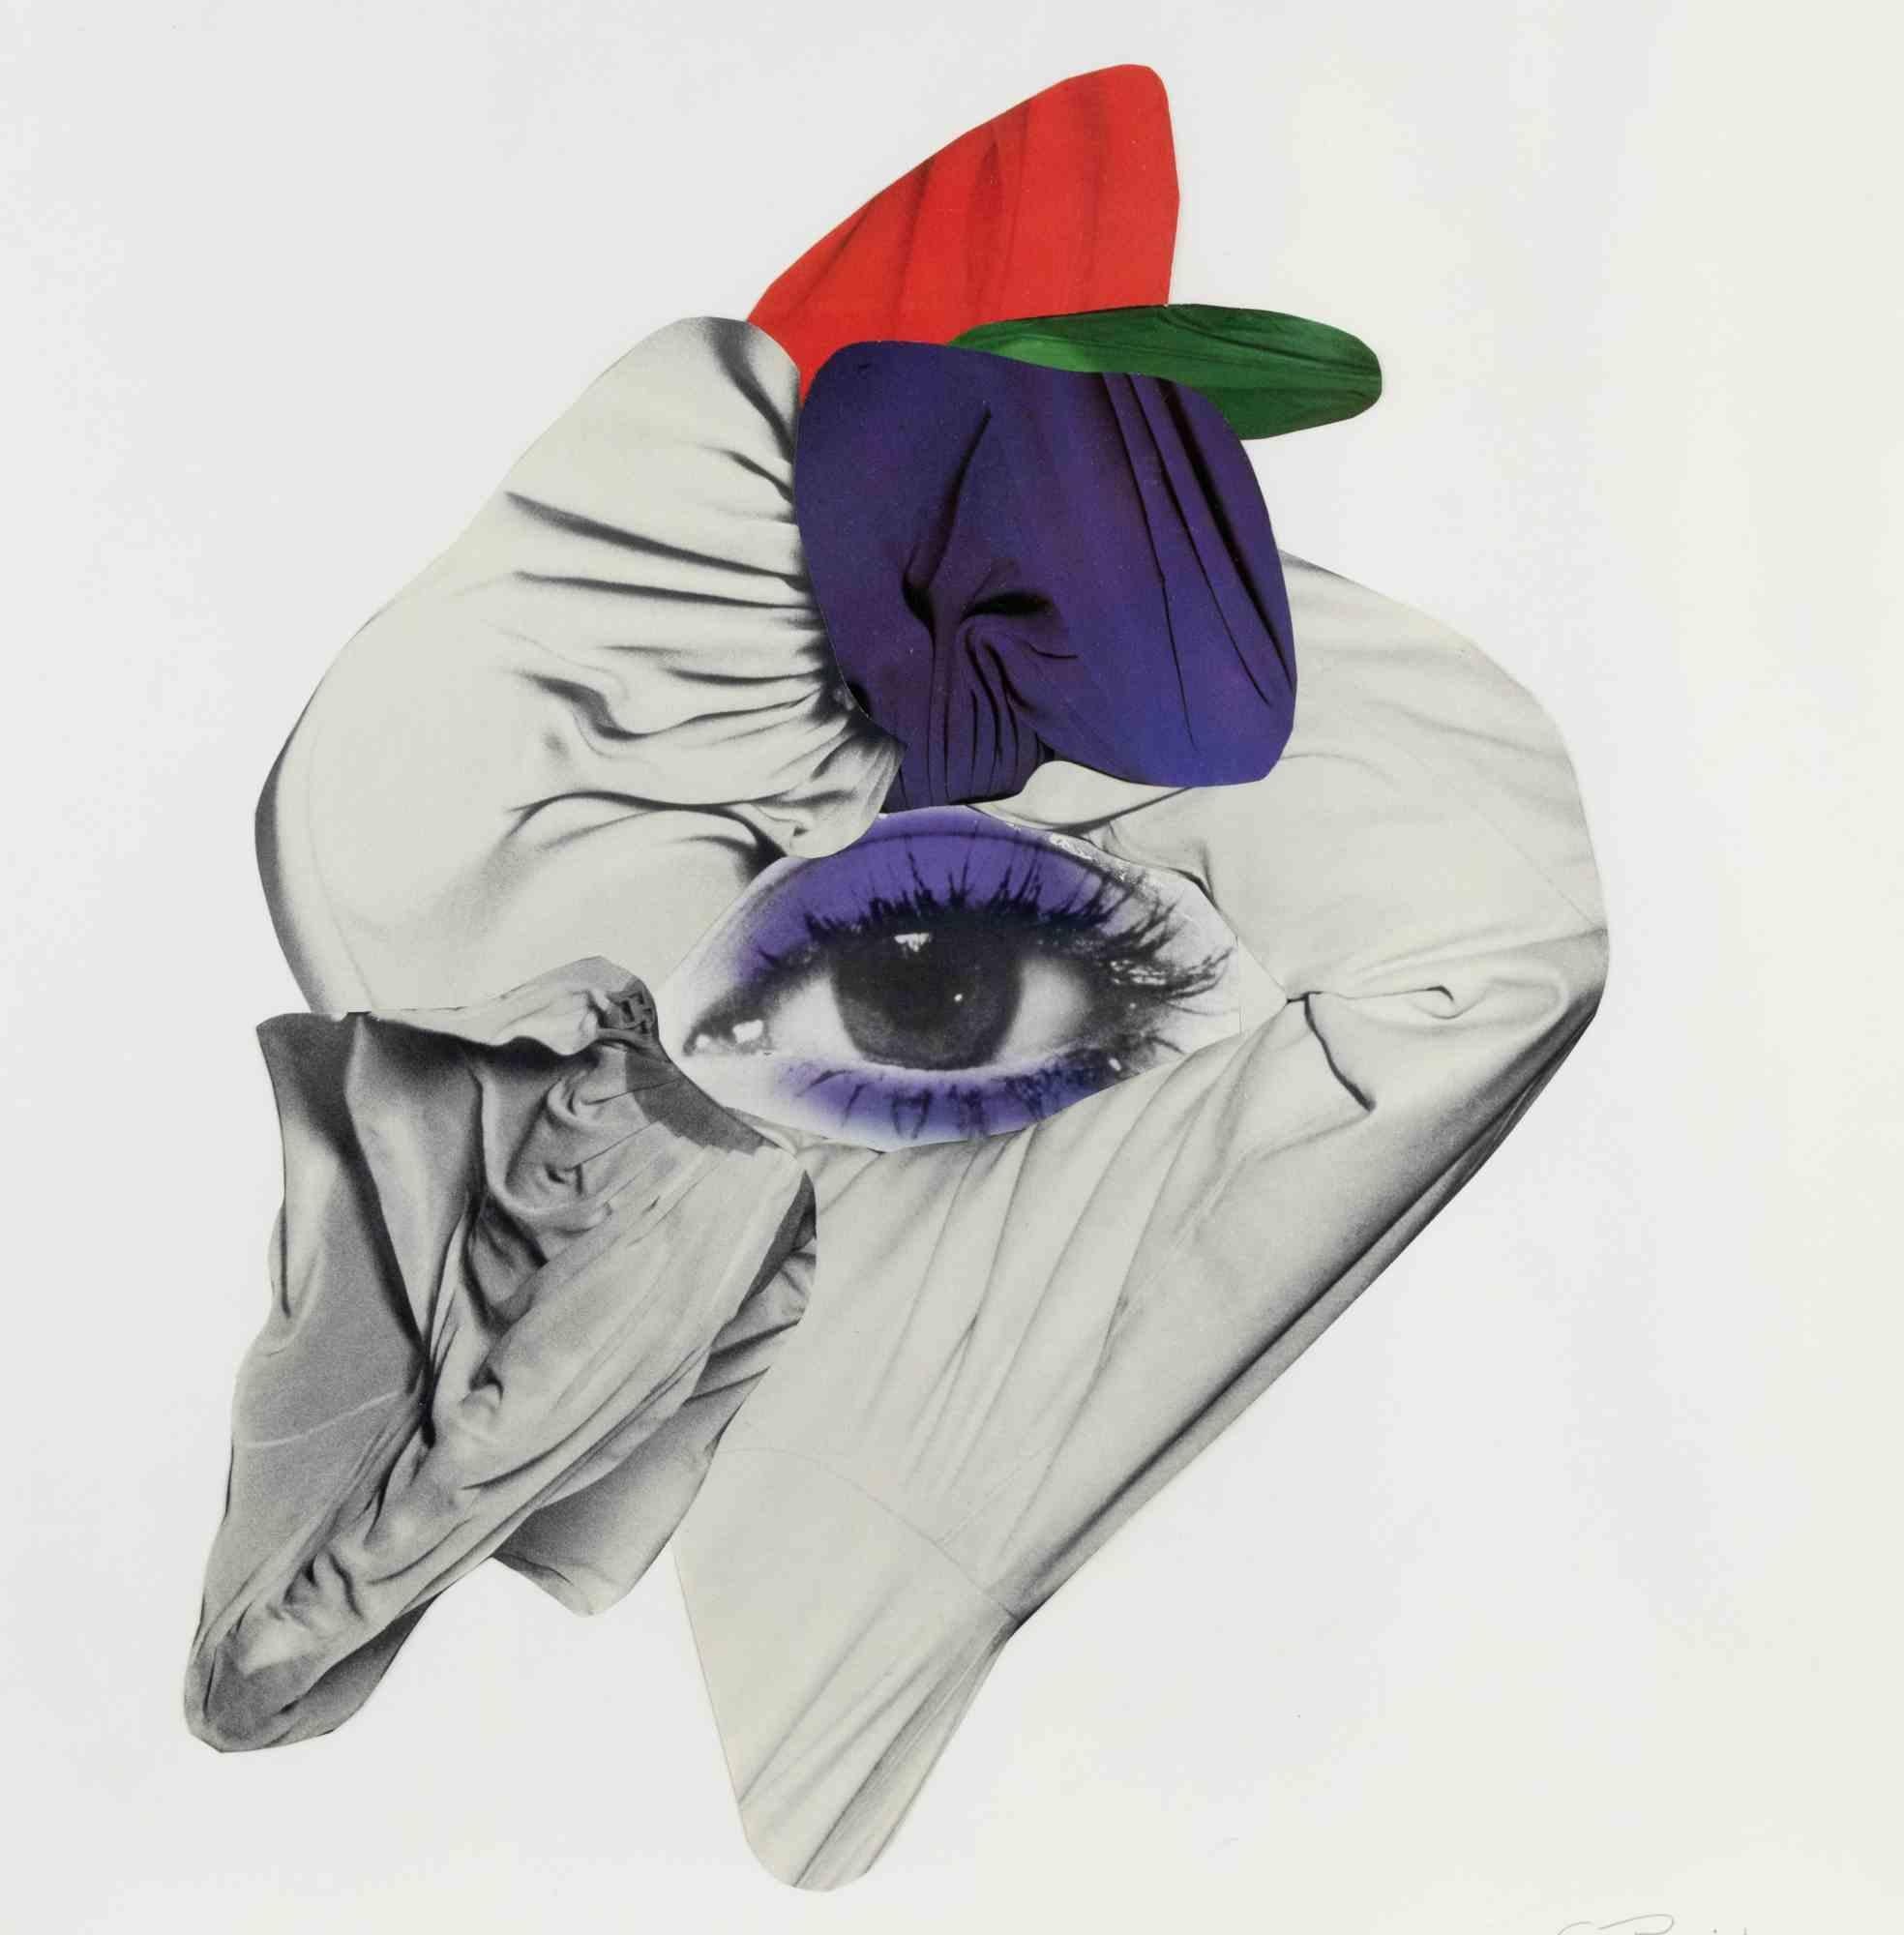 Weiß und Violett ist ein zeitgenössisches Kunstwerk von Genny Puccini aus dem Jahr 1977. 

Gemischte Farbcollage auf Papier.

Handsigniert und datiert am unteren rechten Rand.  









